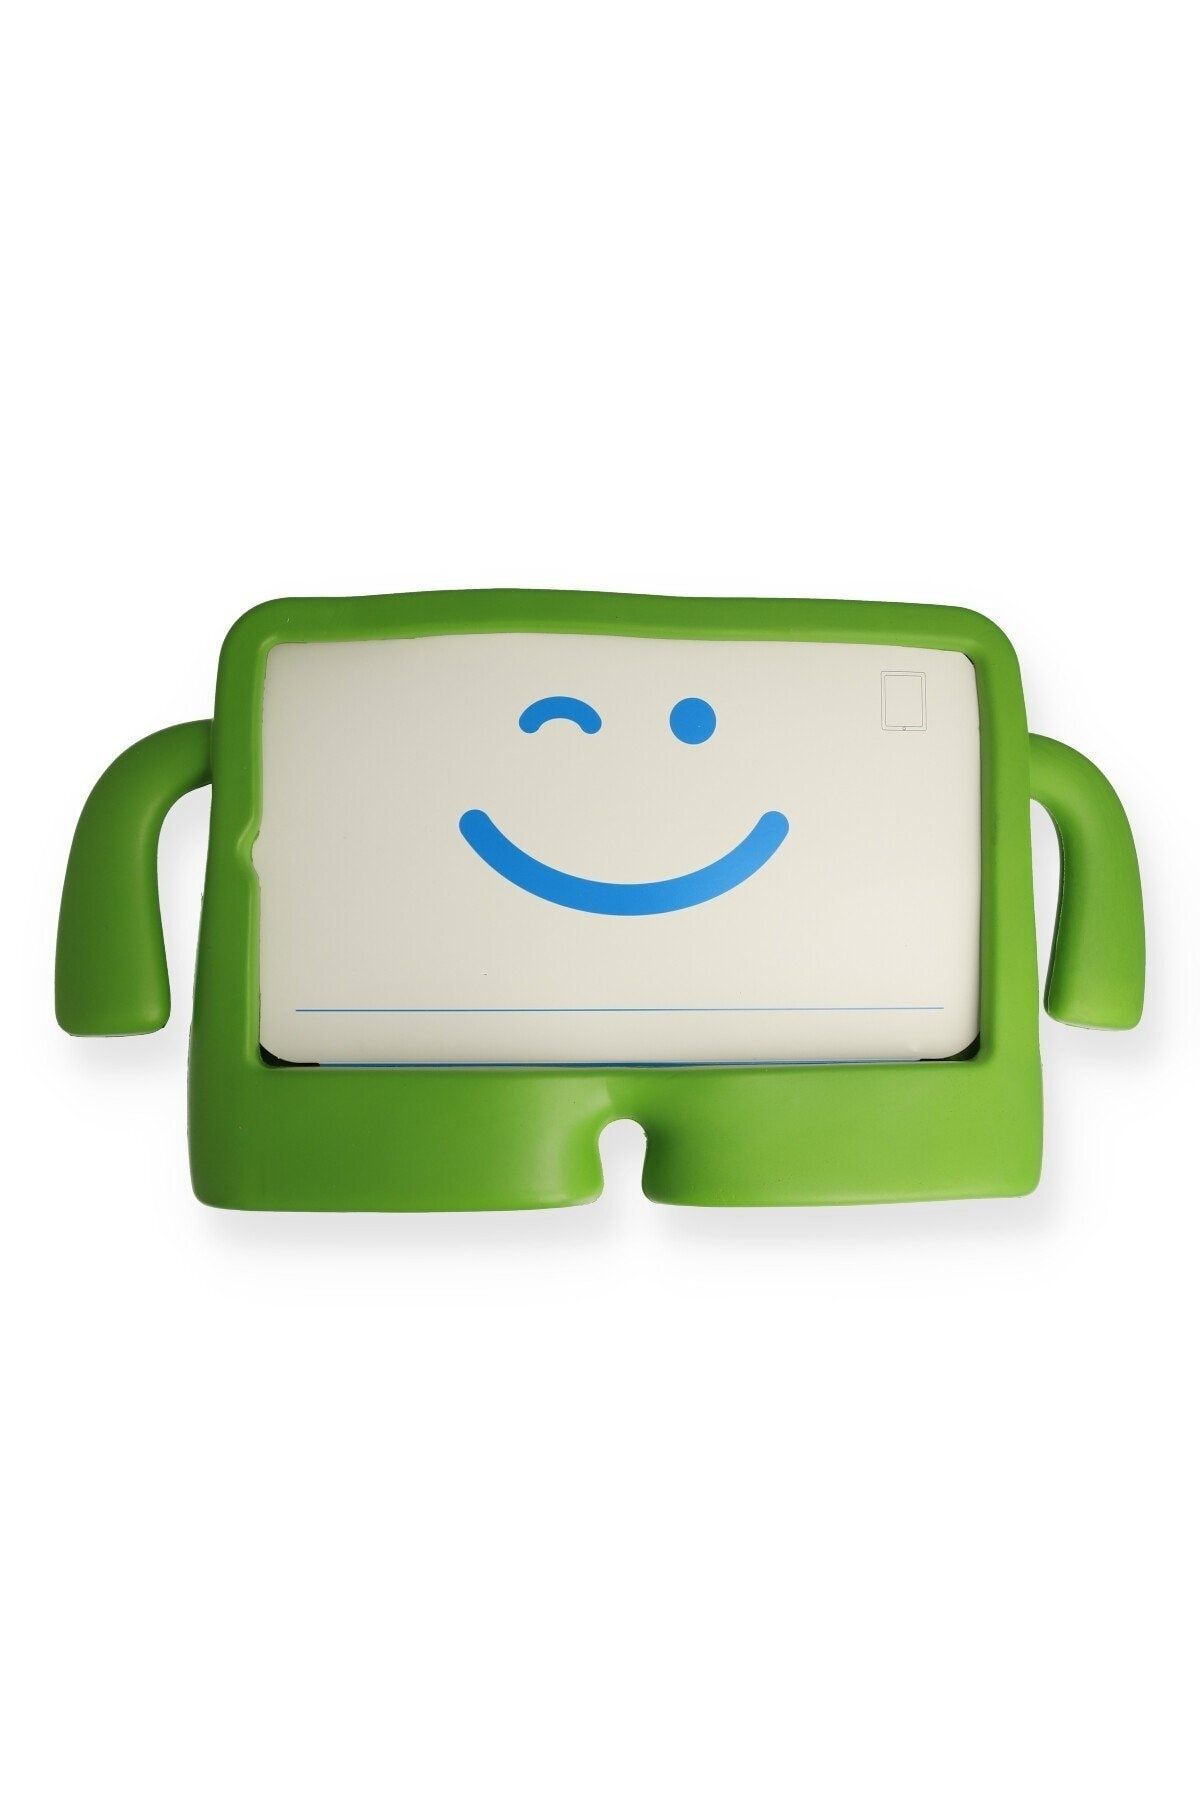 Bilişim Aksesuar Ipad 2 9.7 Kılıf Karakter Tablet Silikon - Yeşil